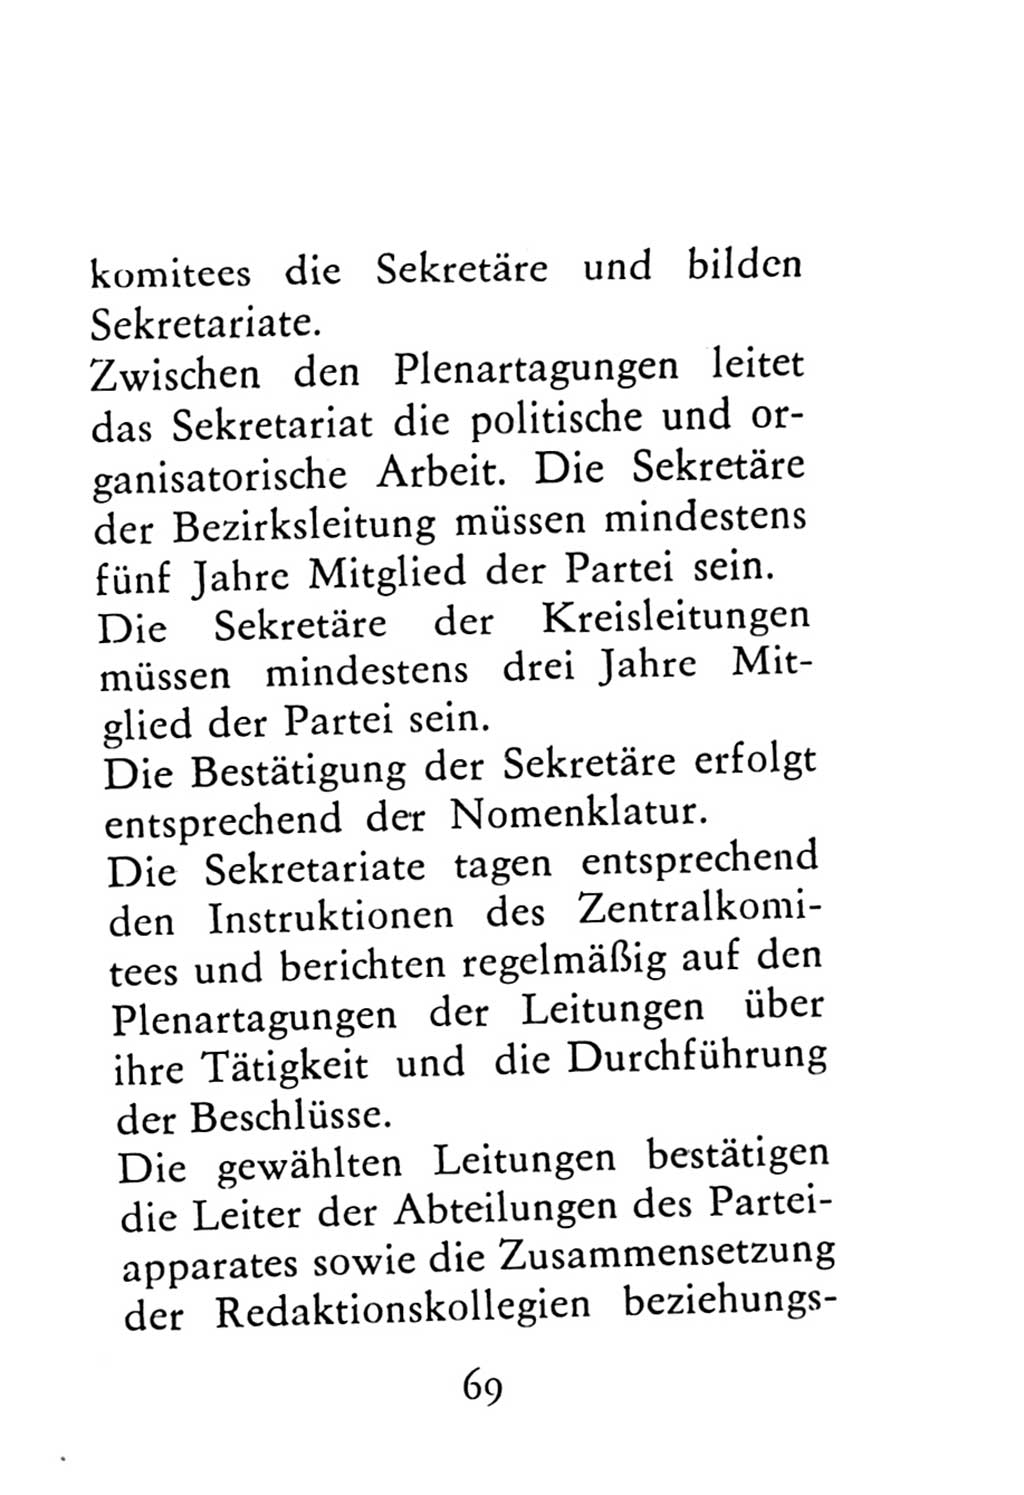 Statut der Sozialistischen Einheitspartei Deutschlands (SED) 1976, Seite 69 (St. SED DDR 1976, S. 69)